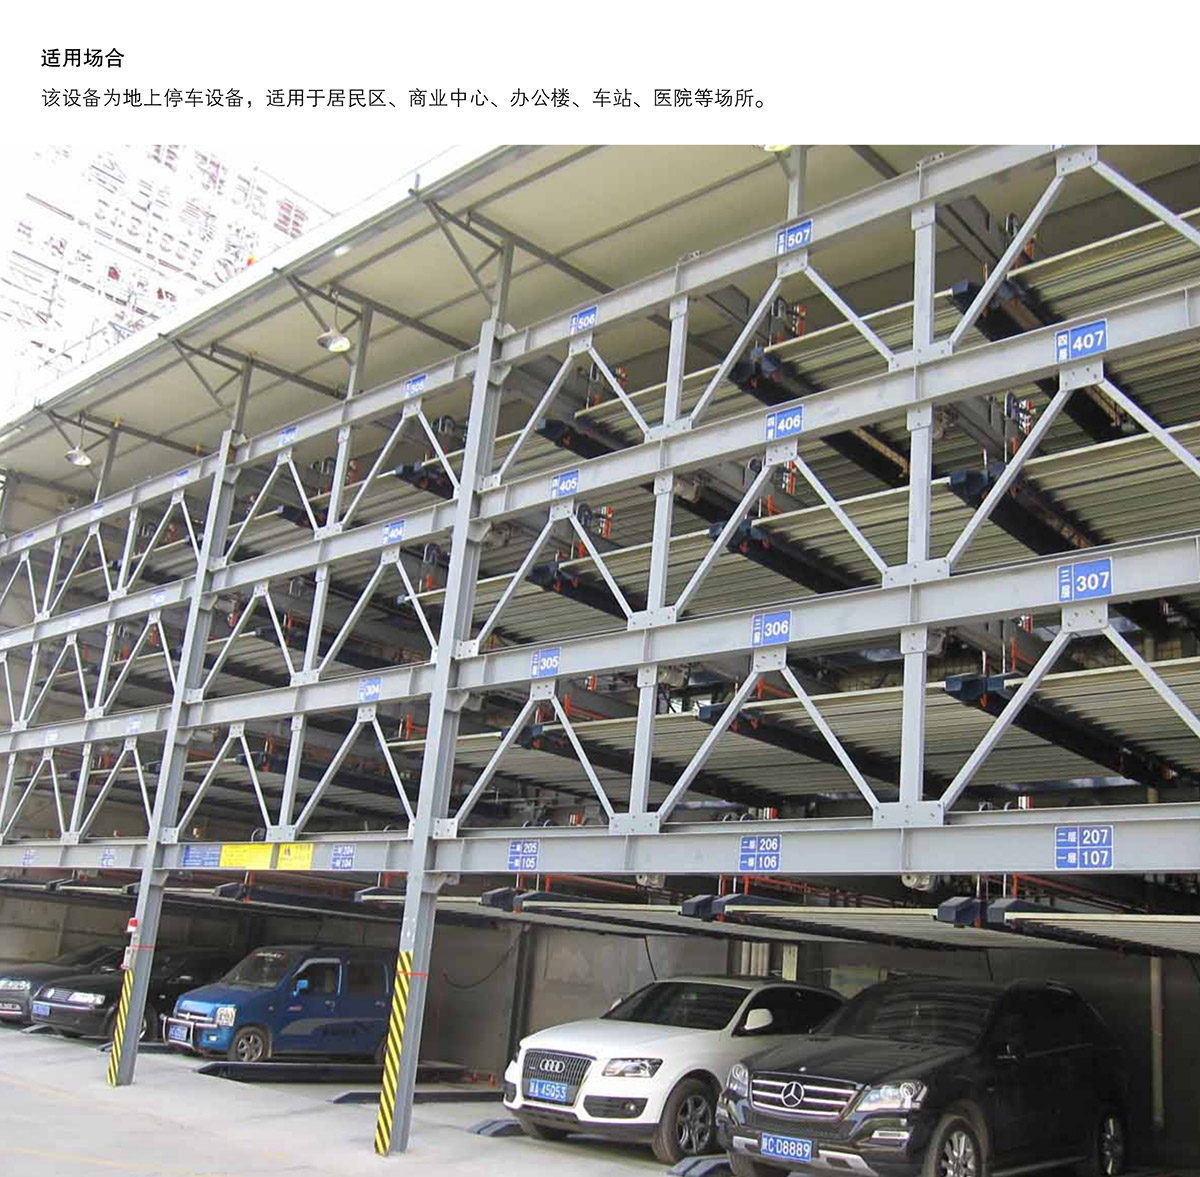 立体停车库09四至六层PSH4-6升降横移机械立体停车适用场合.jpg